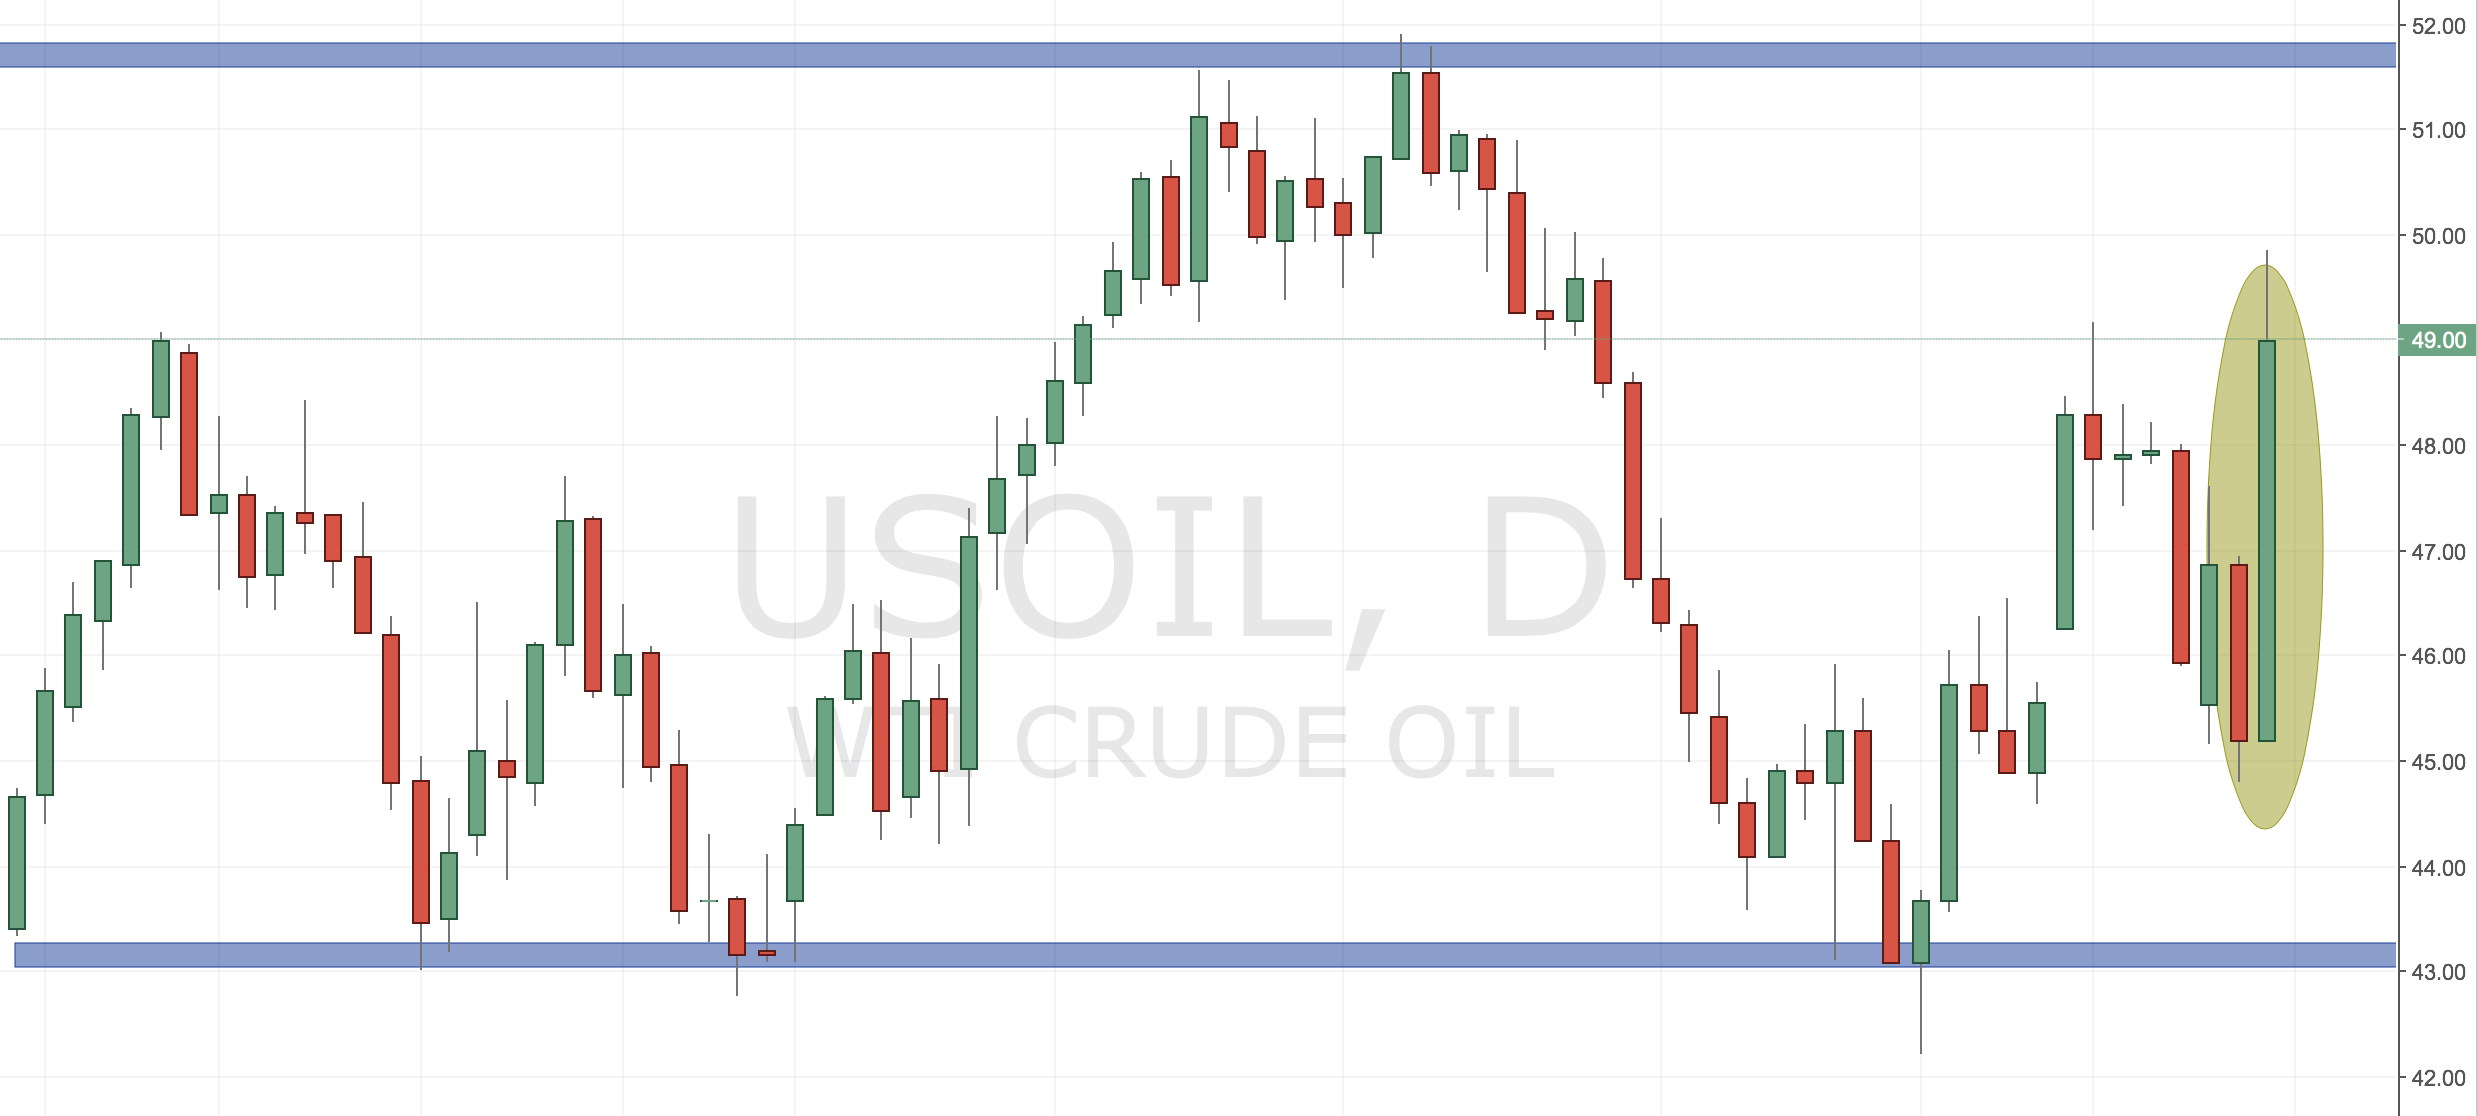 Crude Oil Trading Idea